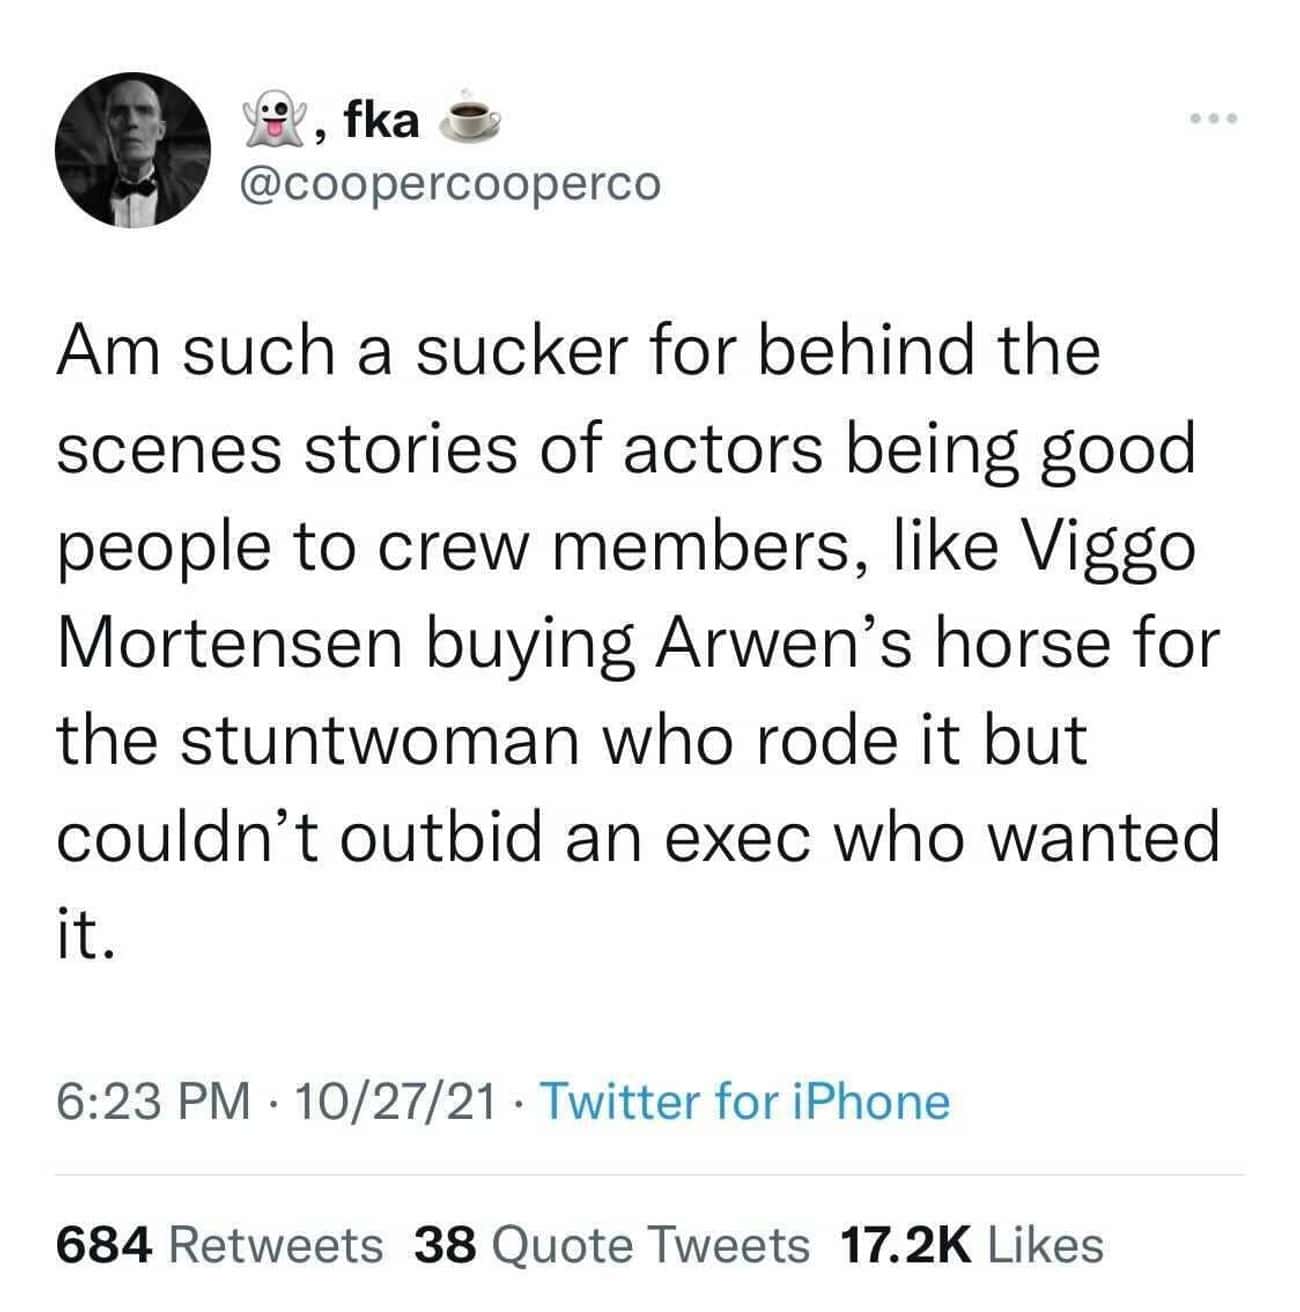 Viggo Mortensen Gifted Arwen's Horse